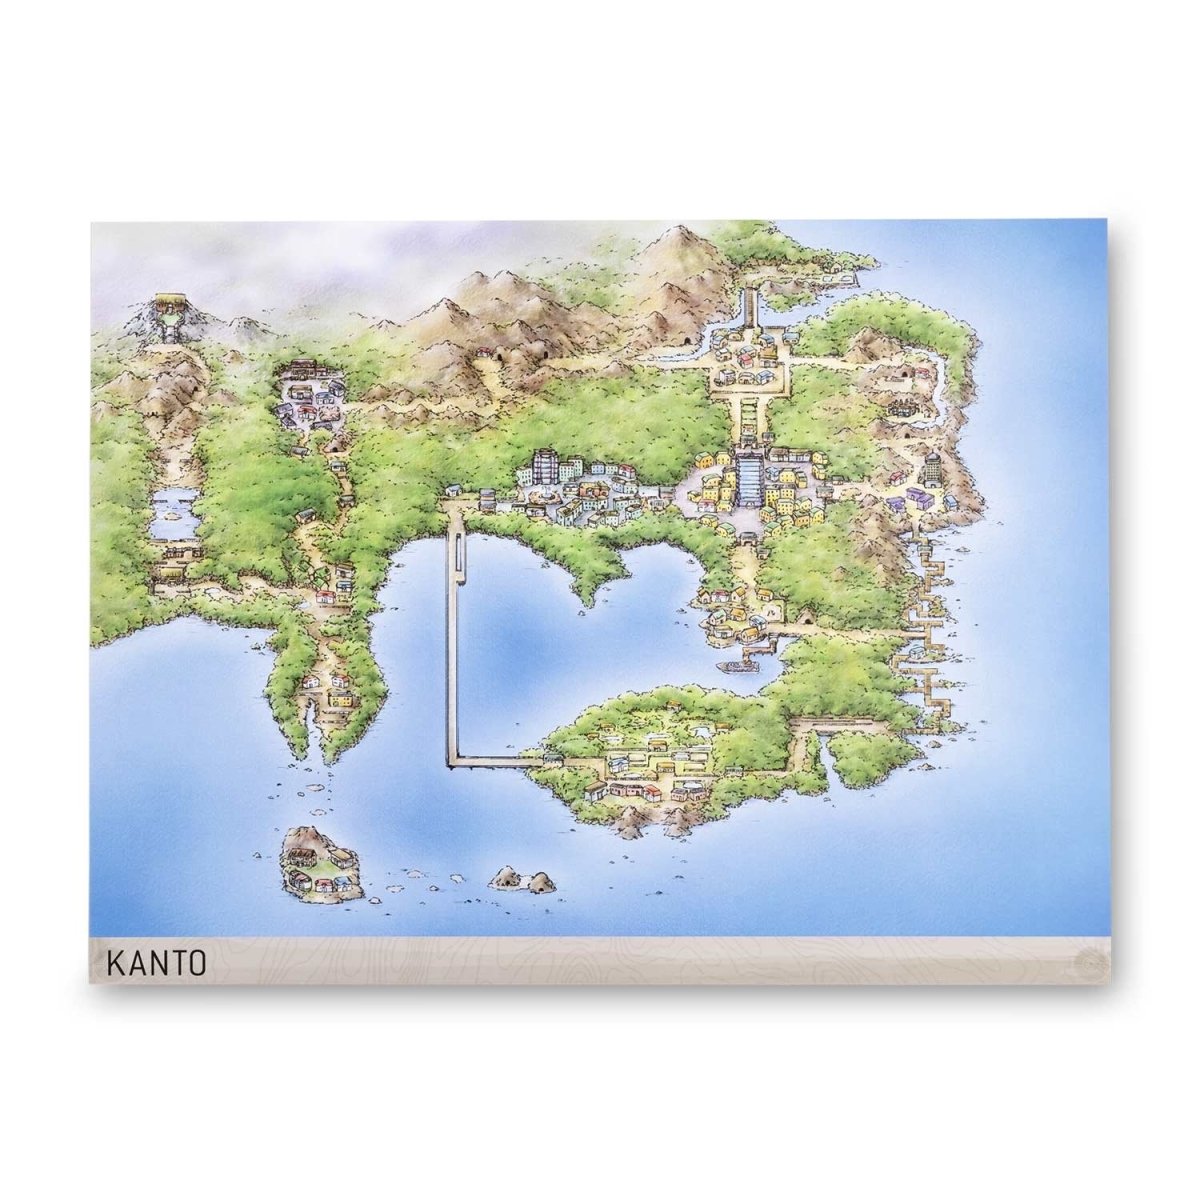 kanto full map